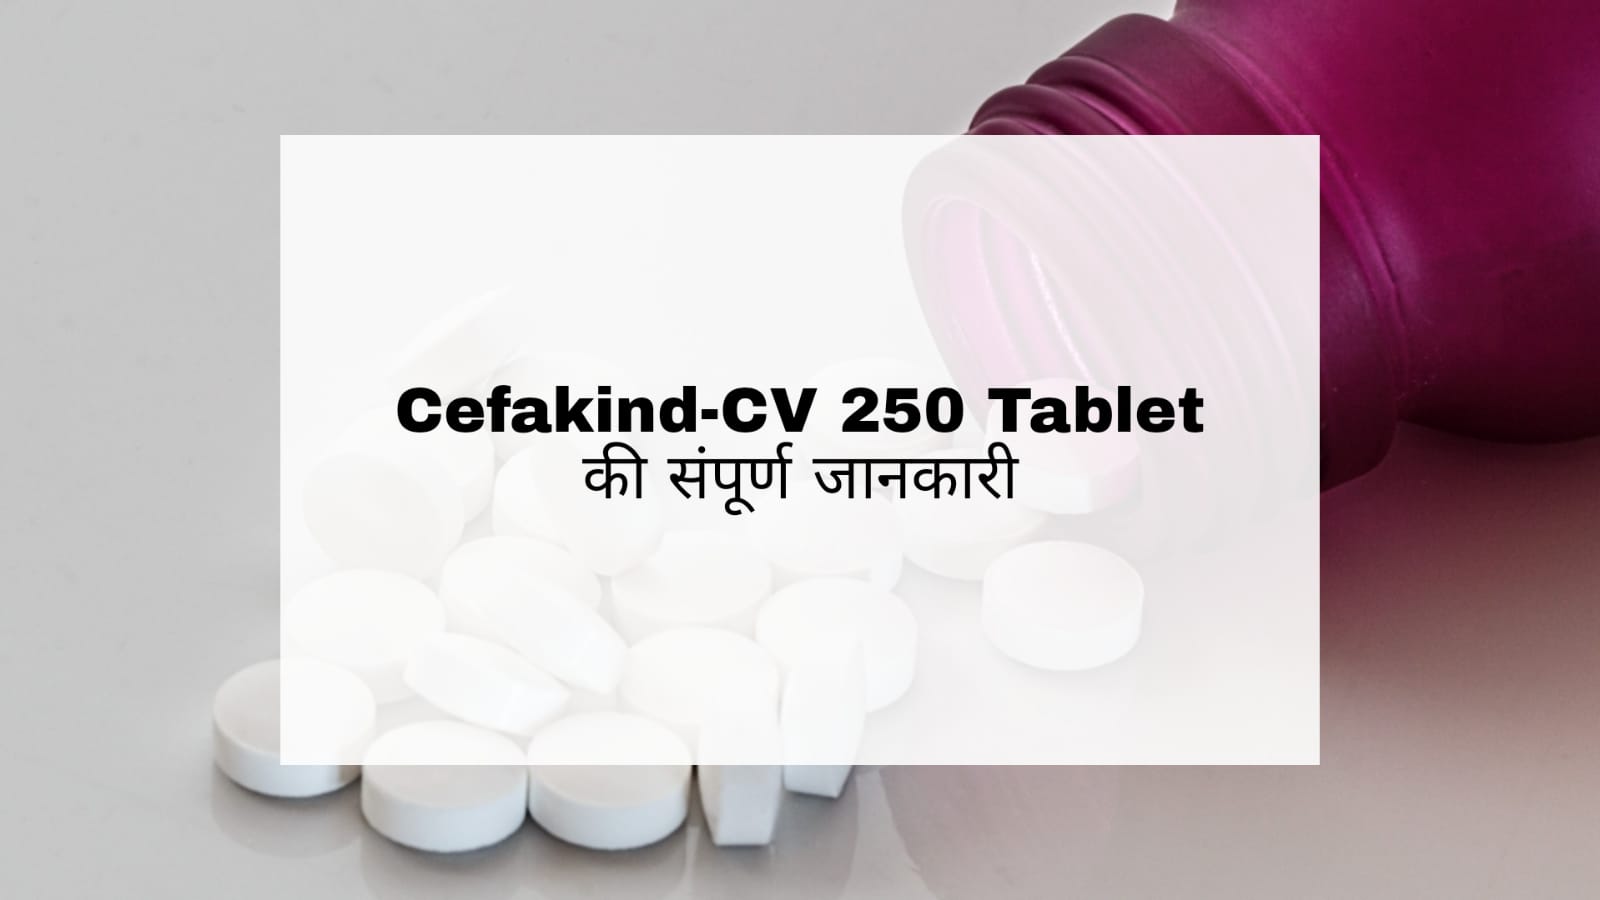 Cefakind-CV 250 Tablet in Hindi: उपयोग, दुष्प्रभाव